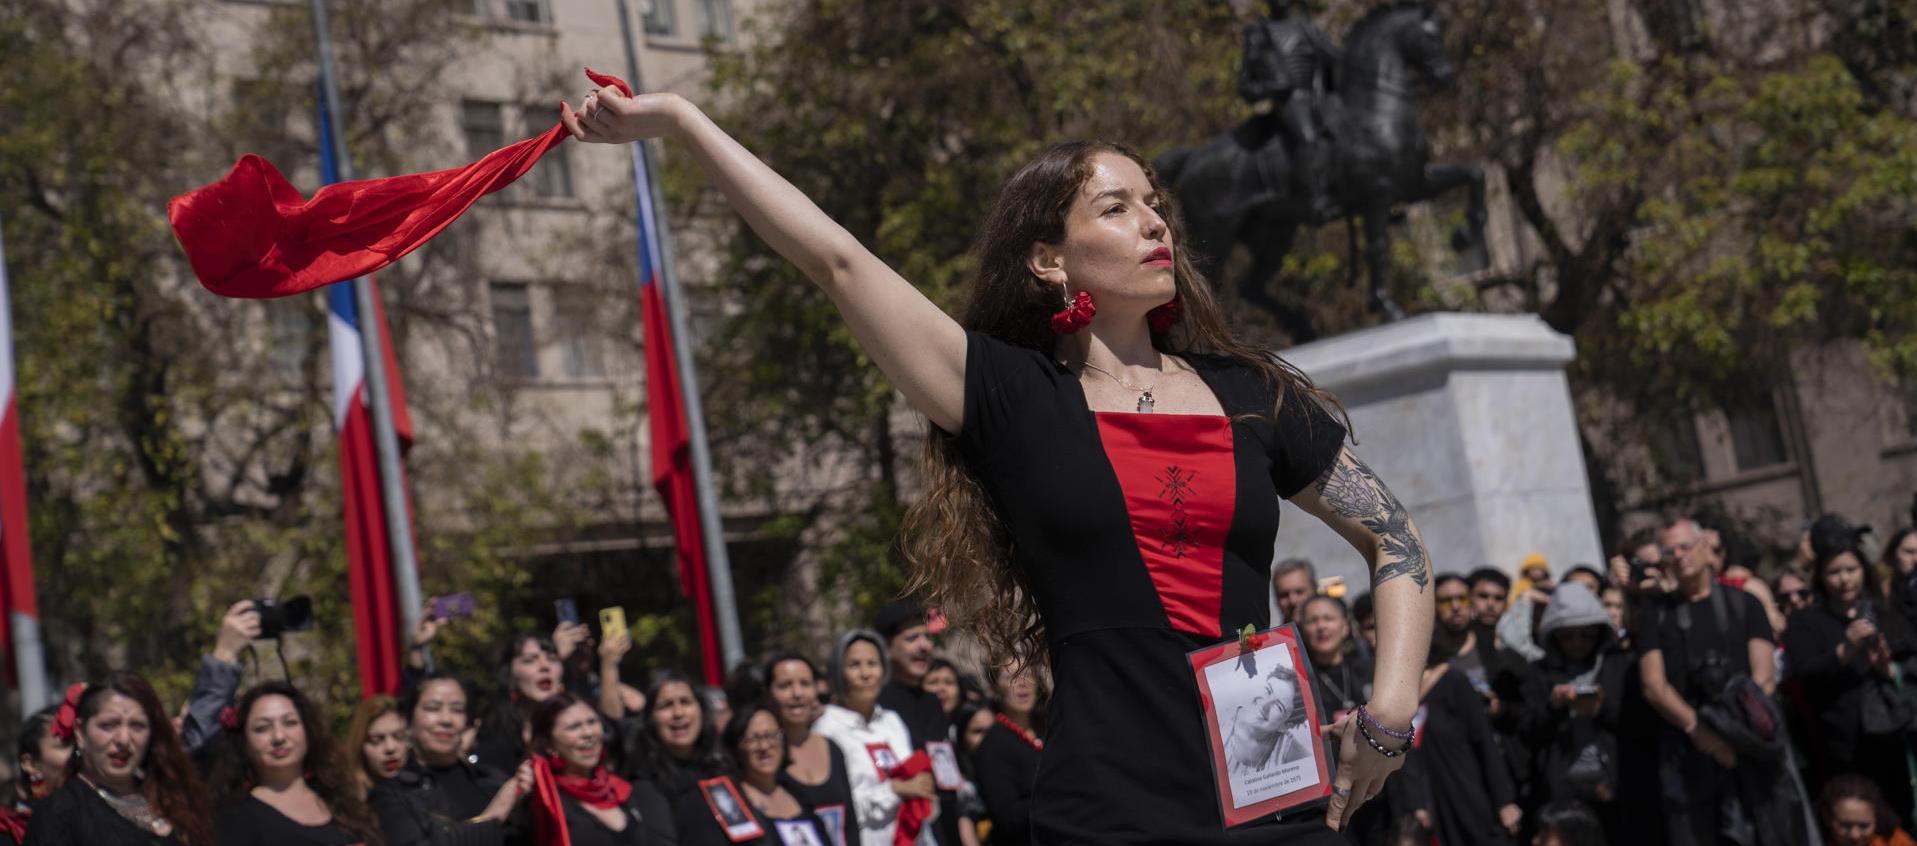  Mujeres bailan una variación de la cueca tradicional creada por la Agrupación de Familiares de Detenidos Desaparecidos, en conmemoración de los 50 años del golpe de Estado en Chile